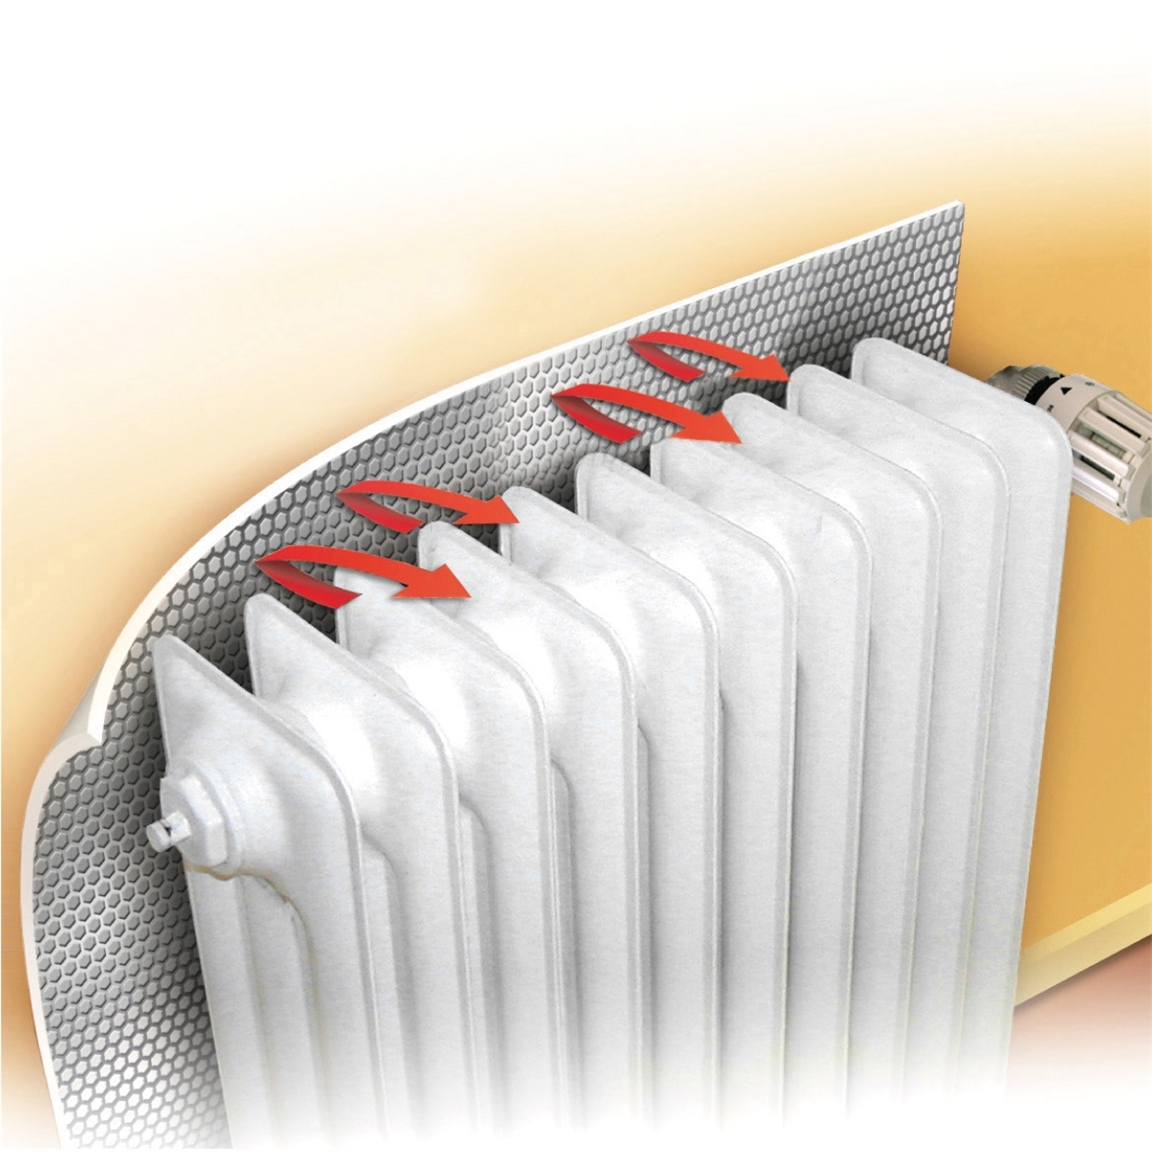 Panneau réflecteur radiateur : optimisez votre chauffage